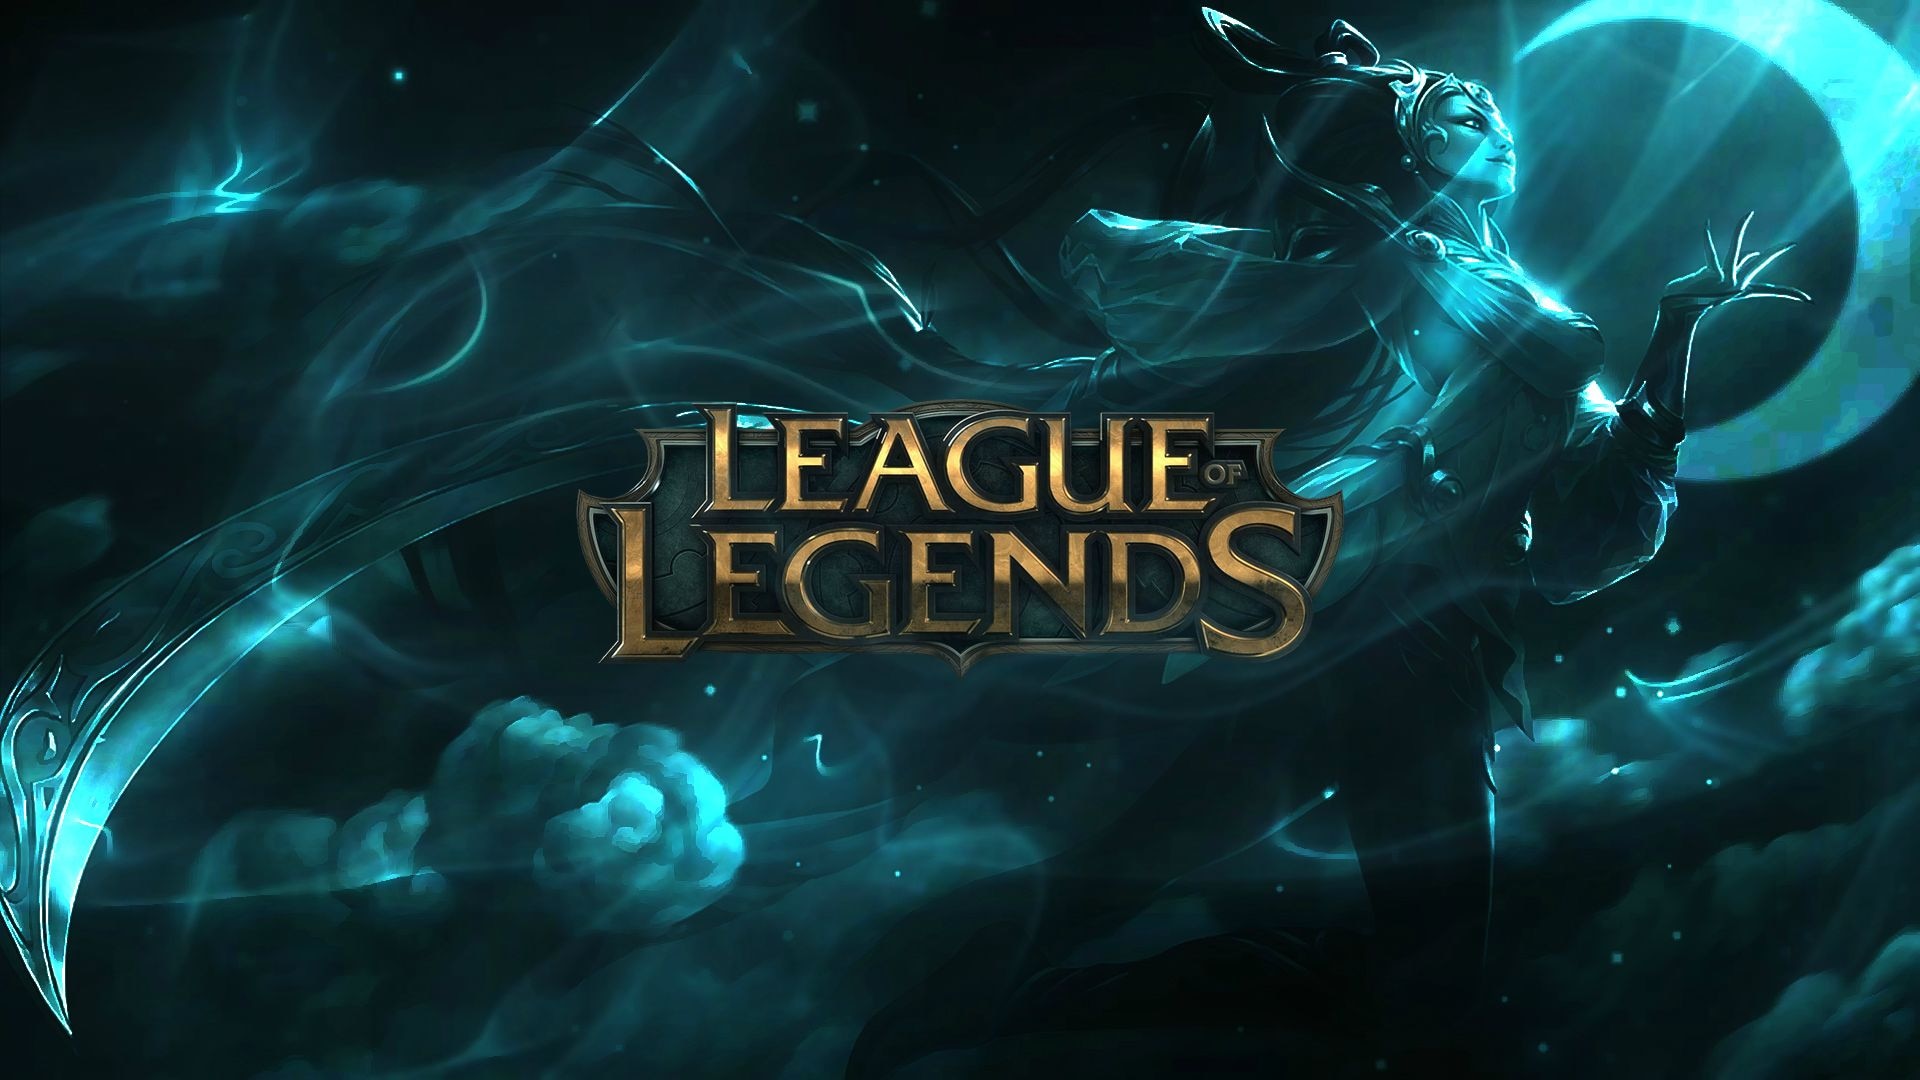 Steam Workshop::League of Legends Skins